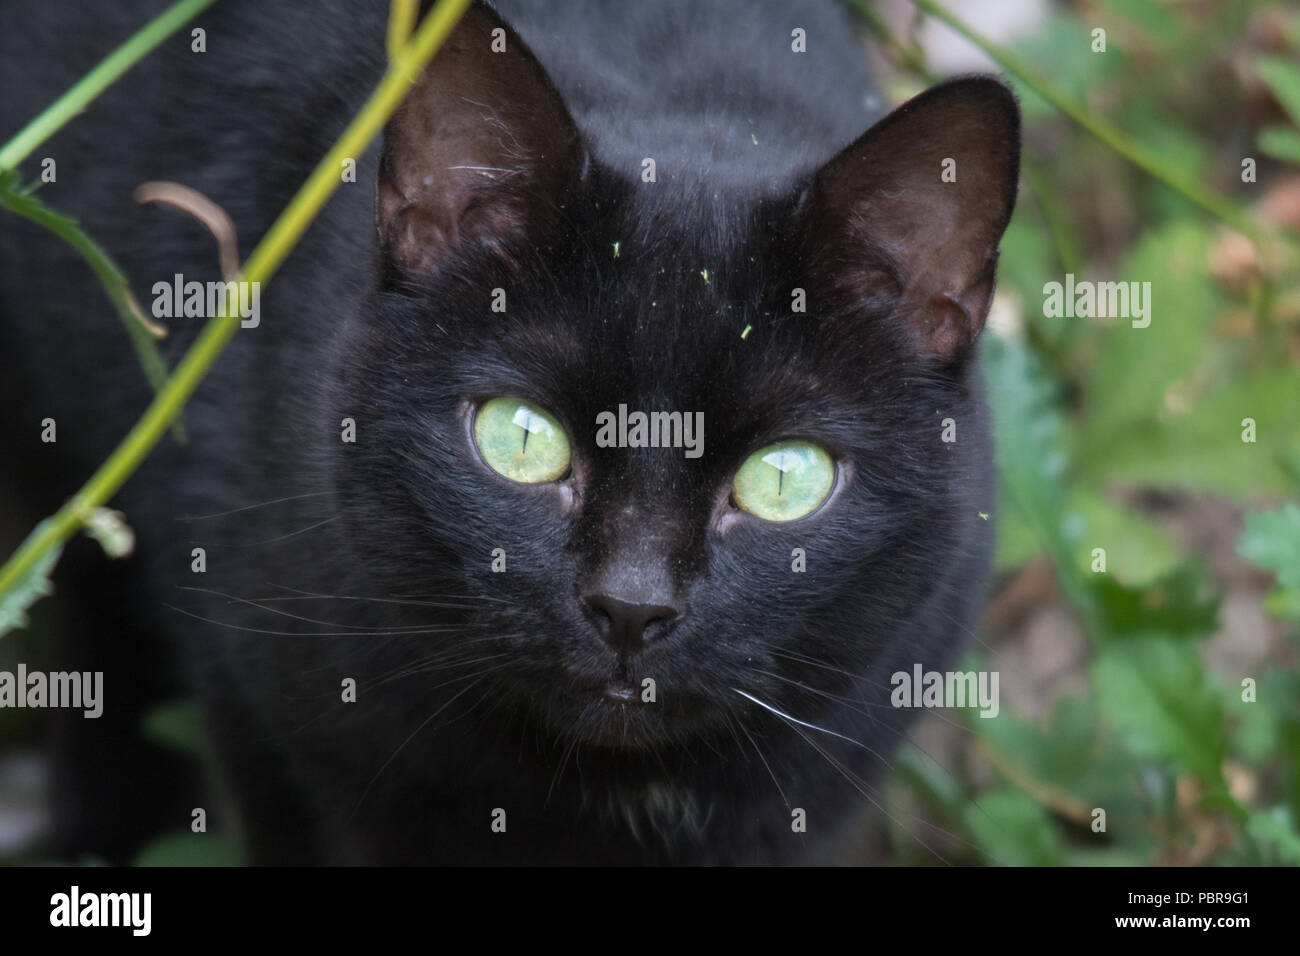 Faccia di un gatto nero con gli occhi verdi in un giardino DEL REGNO UNITO Foto Stock